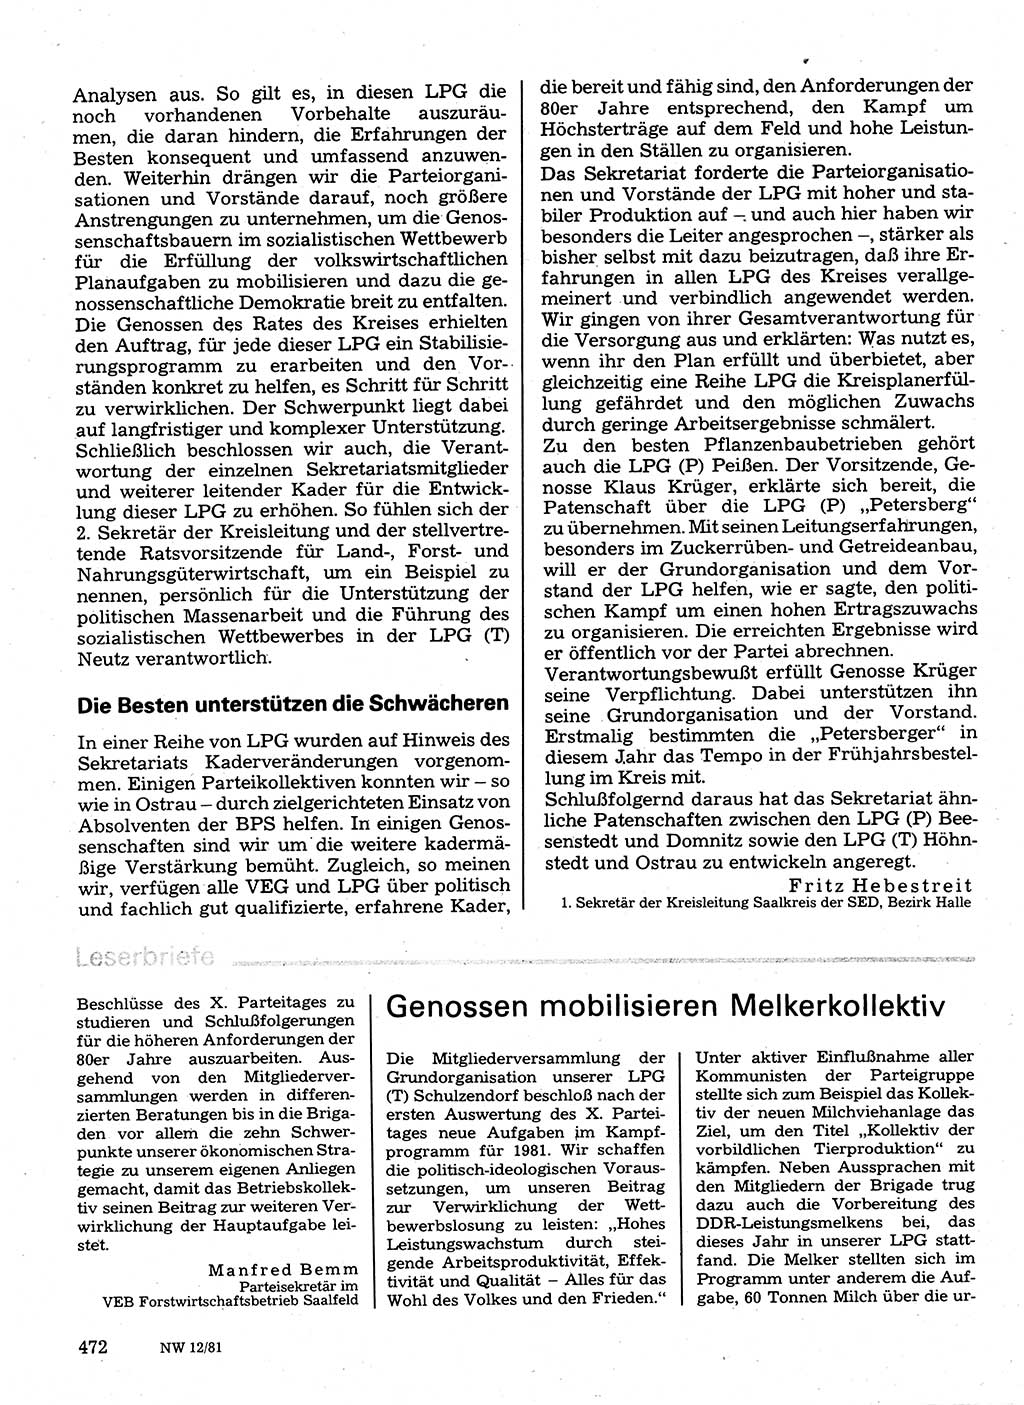 Neuer Weg (NW), Organ des Zentralkomitees (ZK) der SED (Sozialistische Einheitspartei Deutschlands) für Fragen des Parteilebens, 36. Jahrgang [Deutsche Demokratische Republik (DDR)] 1981, Seite 472 (NW ZK SED DDR 1981, S. 472)